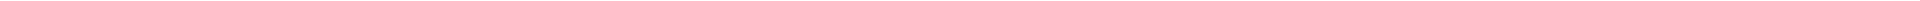 Лечение кариеса зубов - цены в Астане (Нур-Султан), Алматы, Атырау, Усть-Каменогорск, Уральск, Кокшетау в Казахстане, фото 20